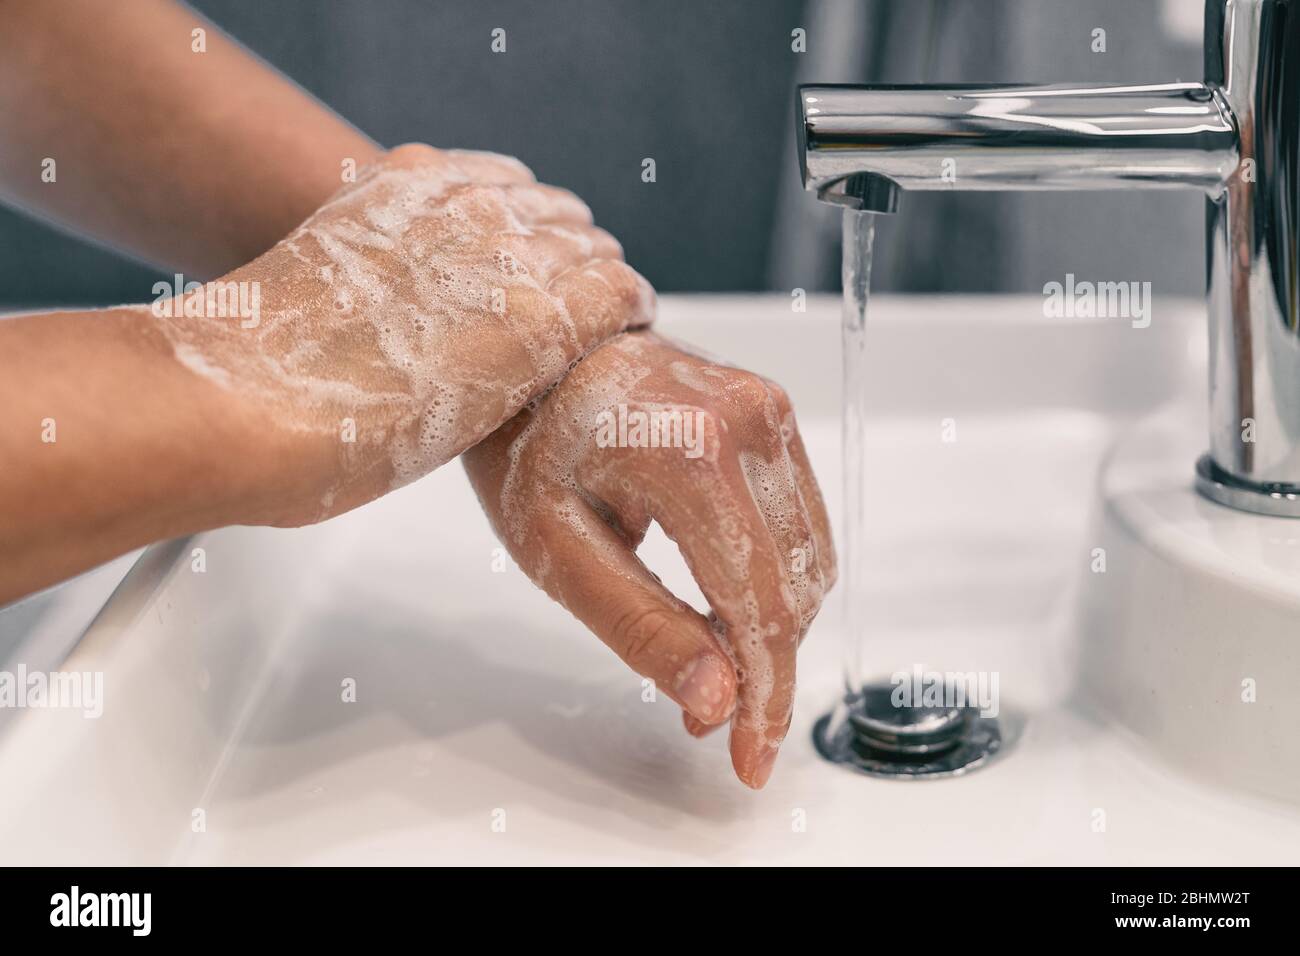 Lavado de manos higiene personal mujer lavarse las manos frotando el jabón durante 20 segundos siguiendo los pasos, limpiando las muñecas y enjuagando bajo agua en el baño de la casa. COVID-19 Prevención de infecciones lavado de manos. Foto de stock